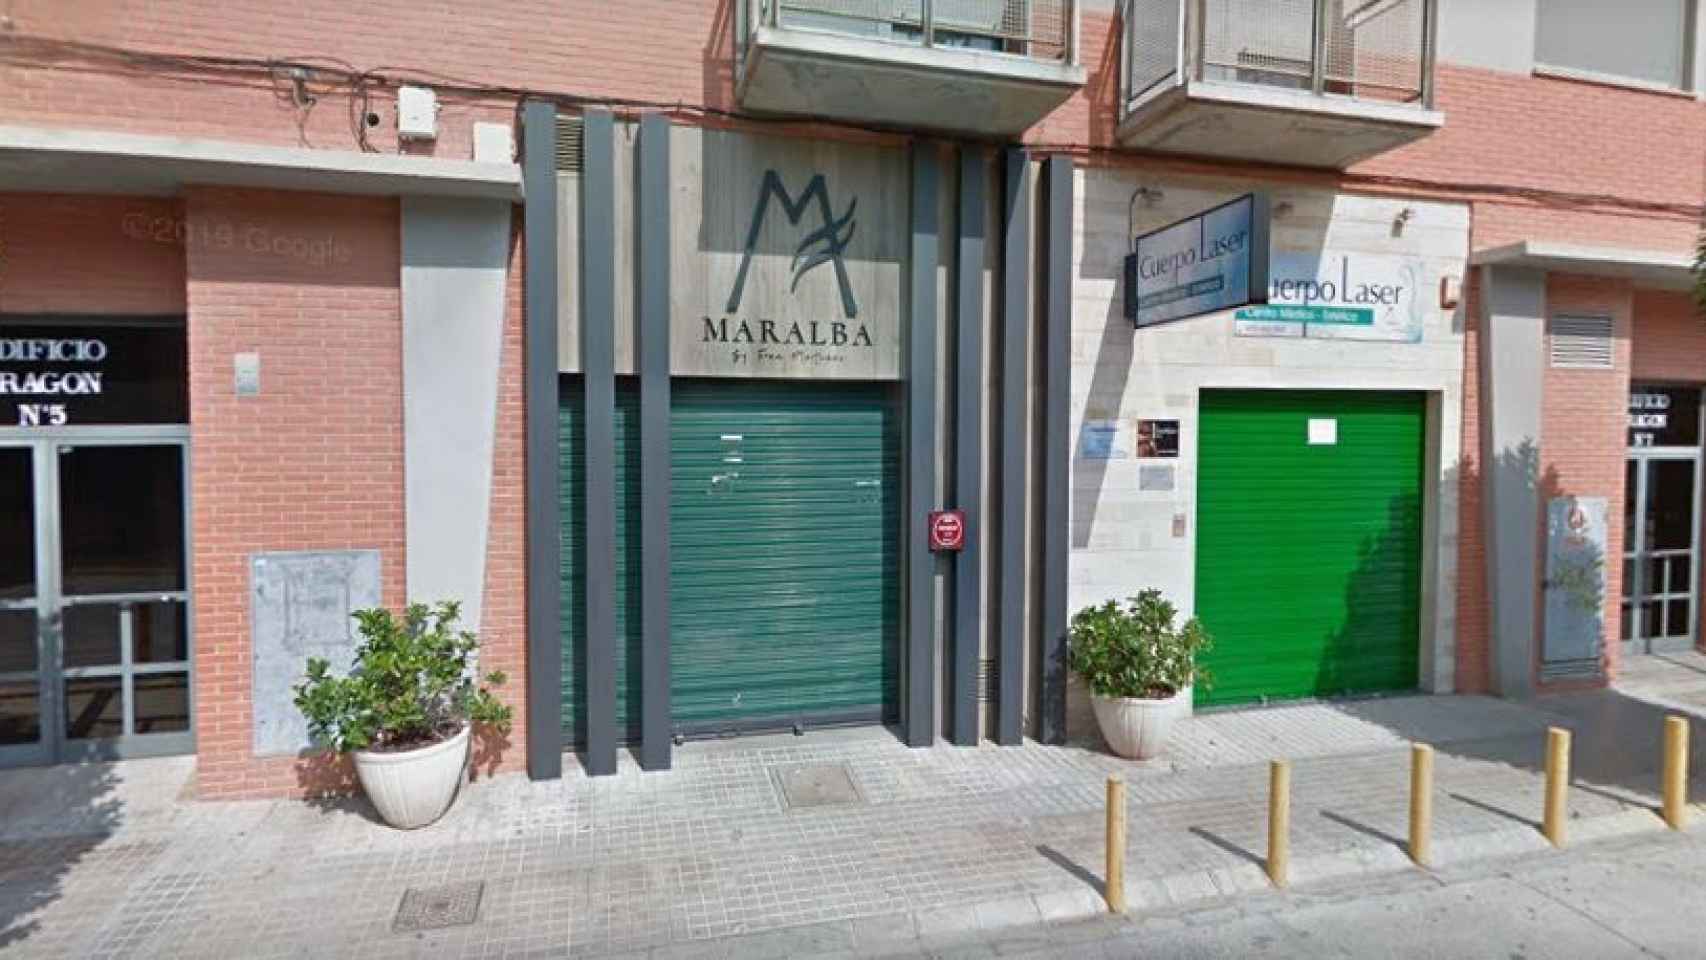 La fachada del restaurante Maralba, en Almansa (Albacete).